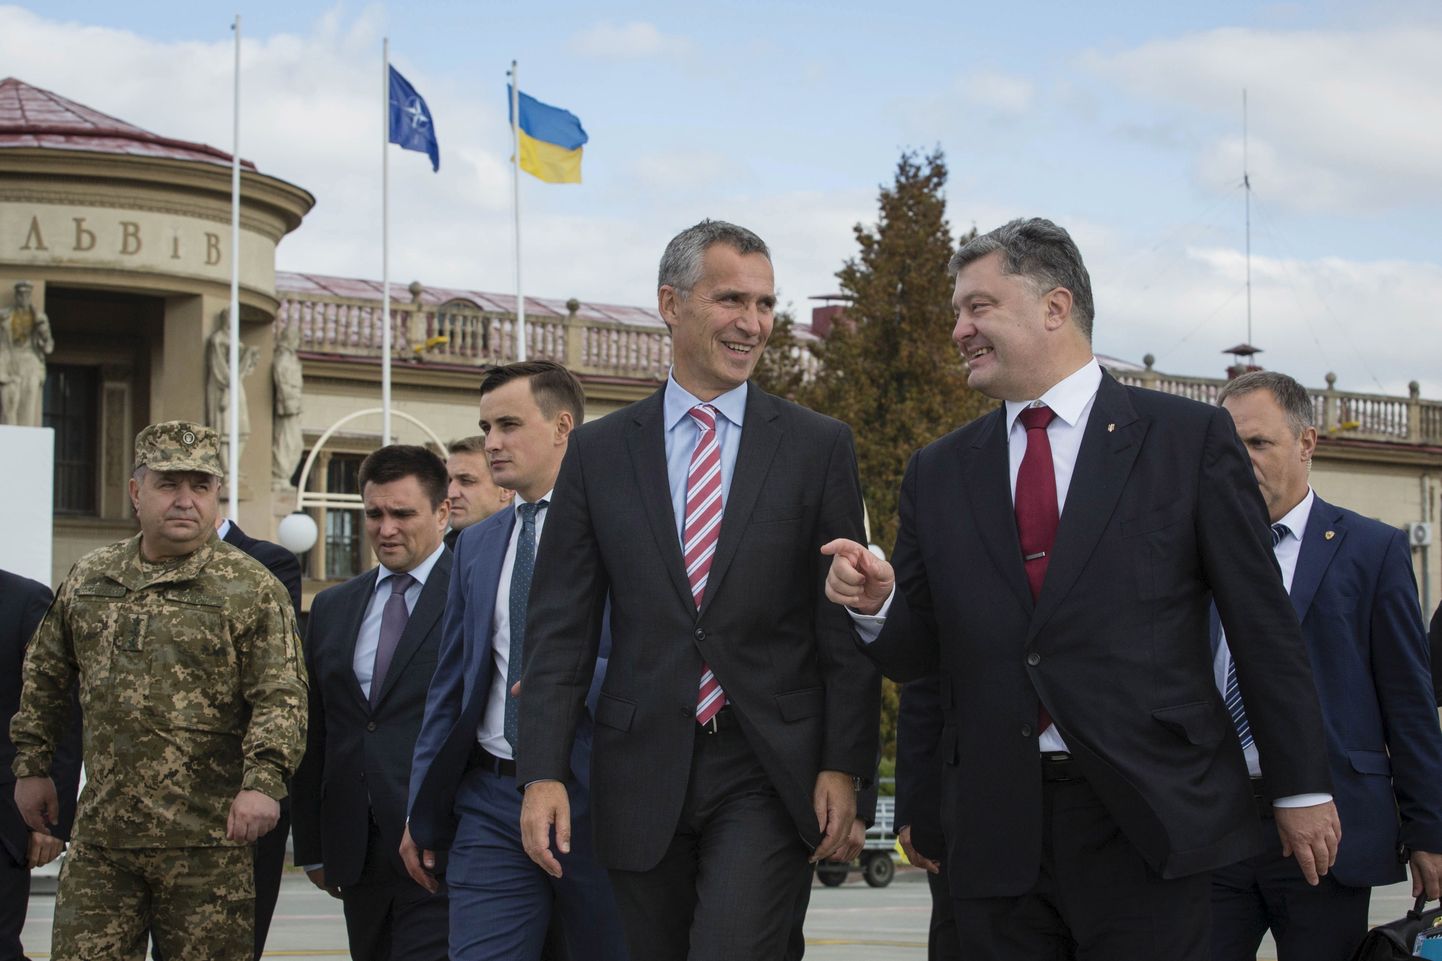 Ukraina kaitseminister Stepan Poltorak (vasakult esimene) ja välisminister Pavlo Klimkin (vasakult teine) mullu septembris Lvivi oblastis saatmas toonast presidenti Petro Porošenkot ja NATO  peasekretäri Jens Stoltenbergi.